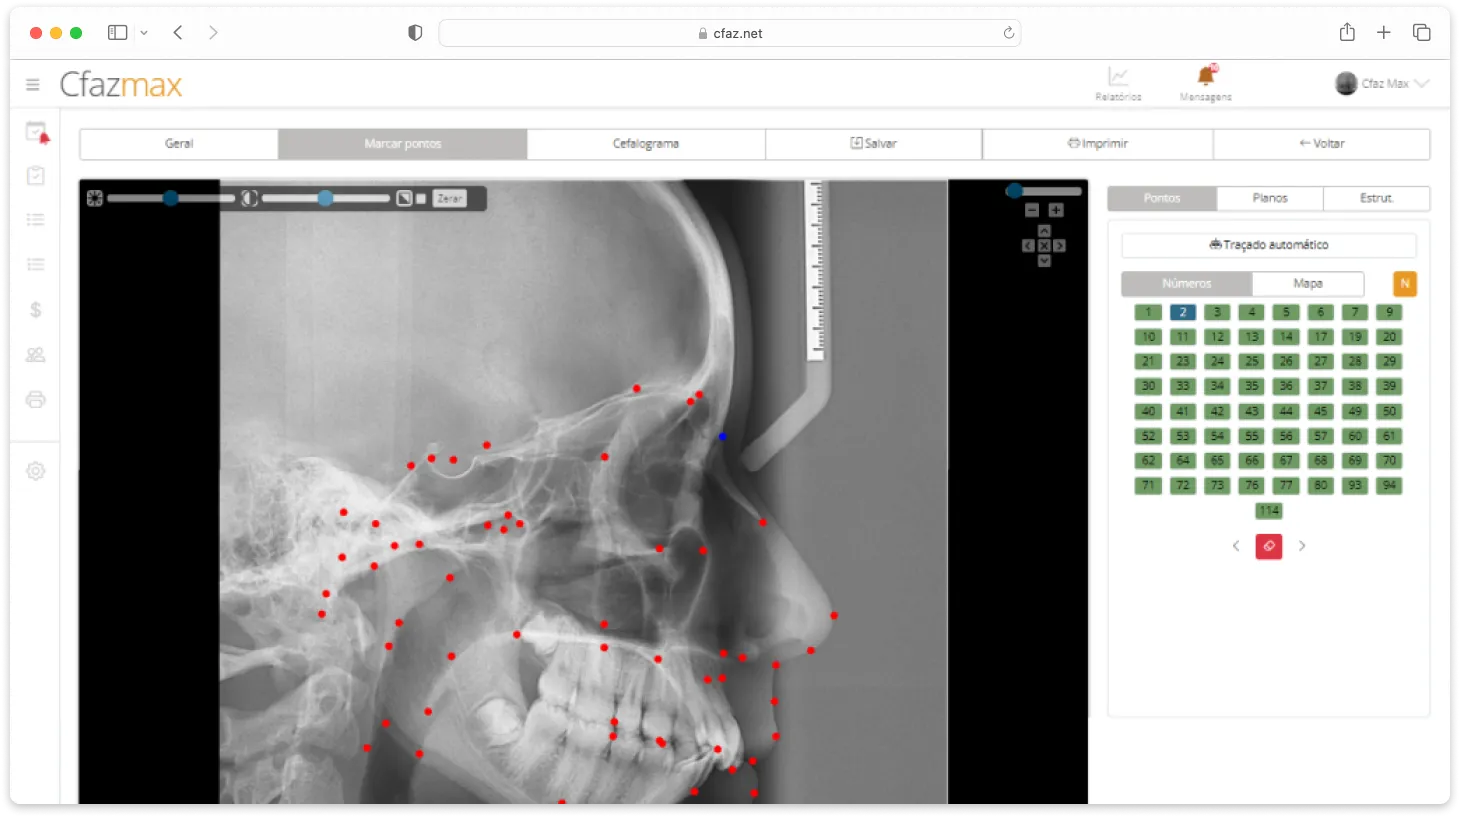 Pantalla del sistema Cfaz.net con un examen de cefalometría